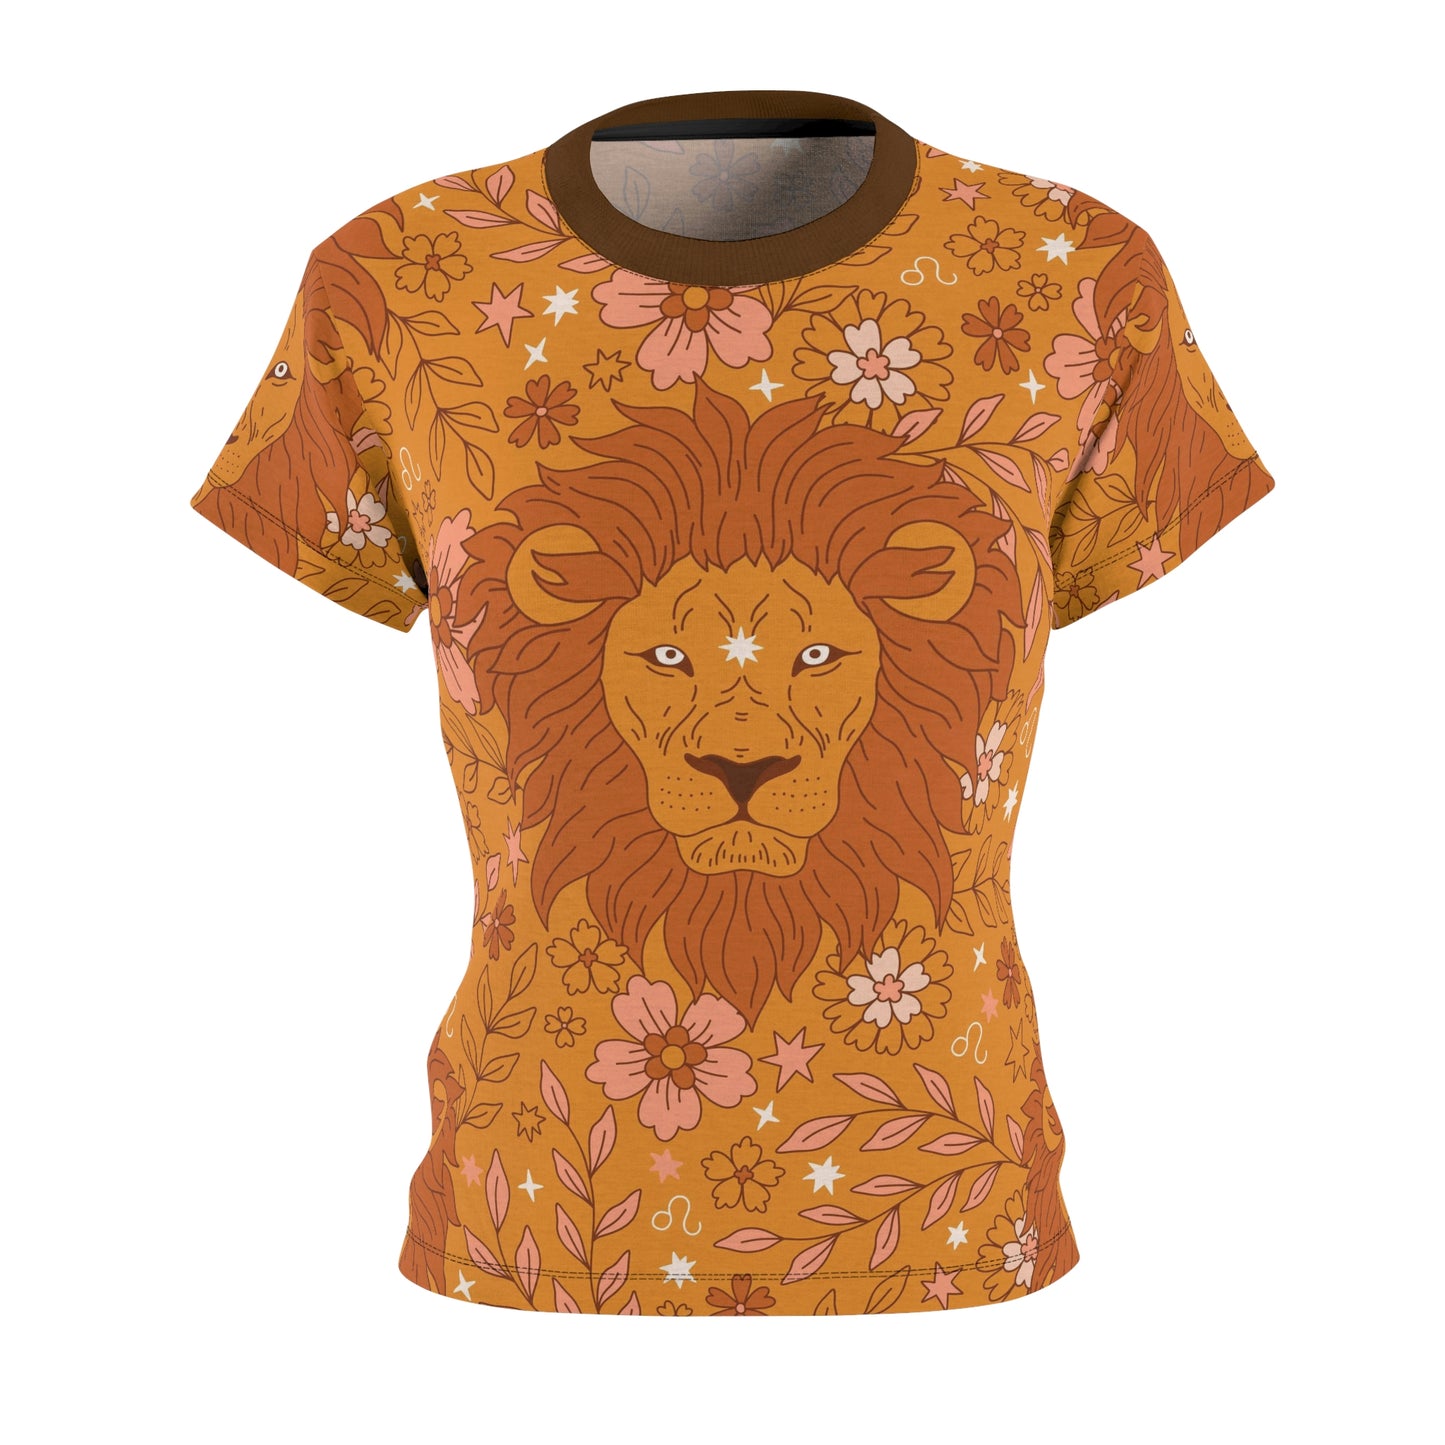 Lion Roar T-Shirt